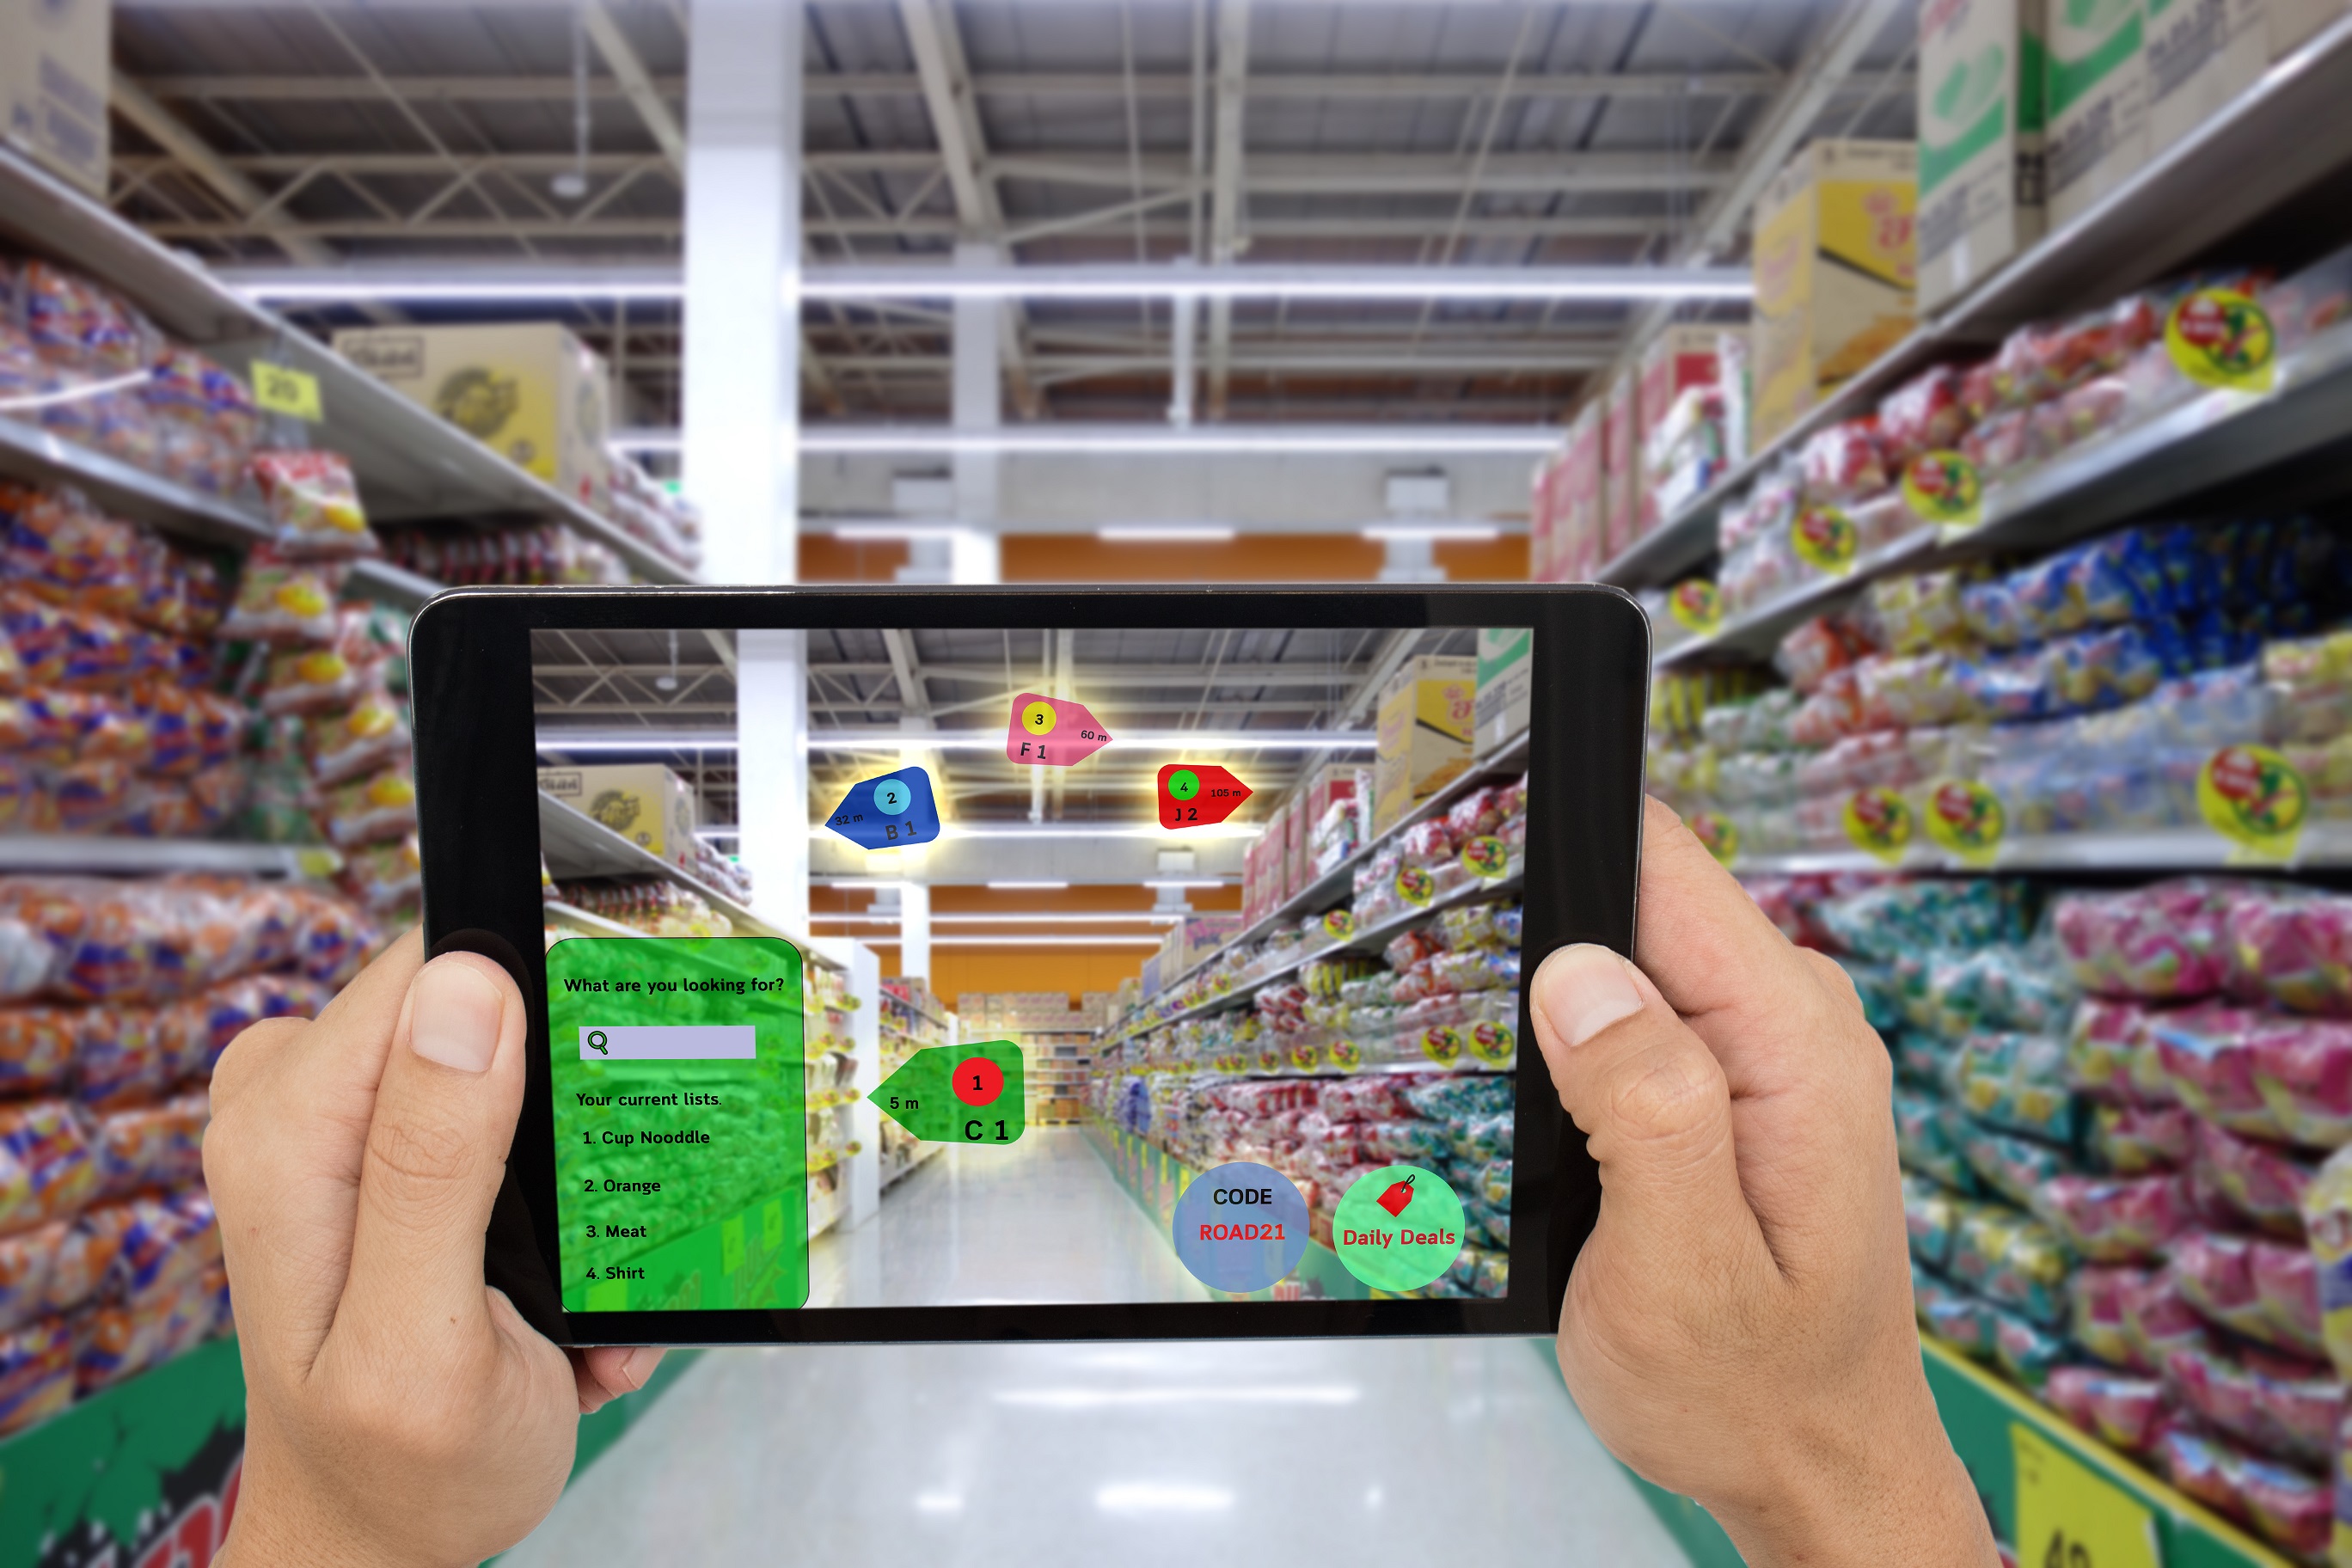 Das Bild zeigt einen Supermarkt mit vollen Regalen. Im Vordergrund sind zwei Hände, die ein Tablet halten. Auf dem ist der Supermarkt mit Augmented Reality animiert.